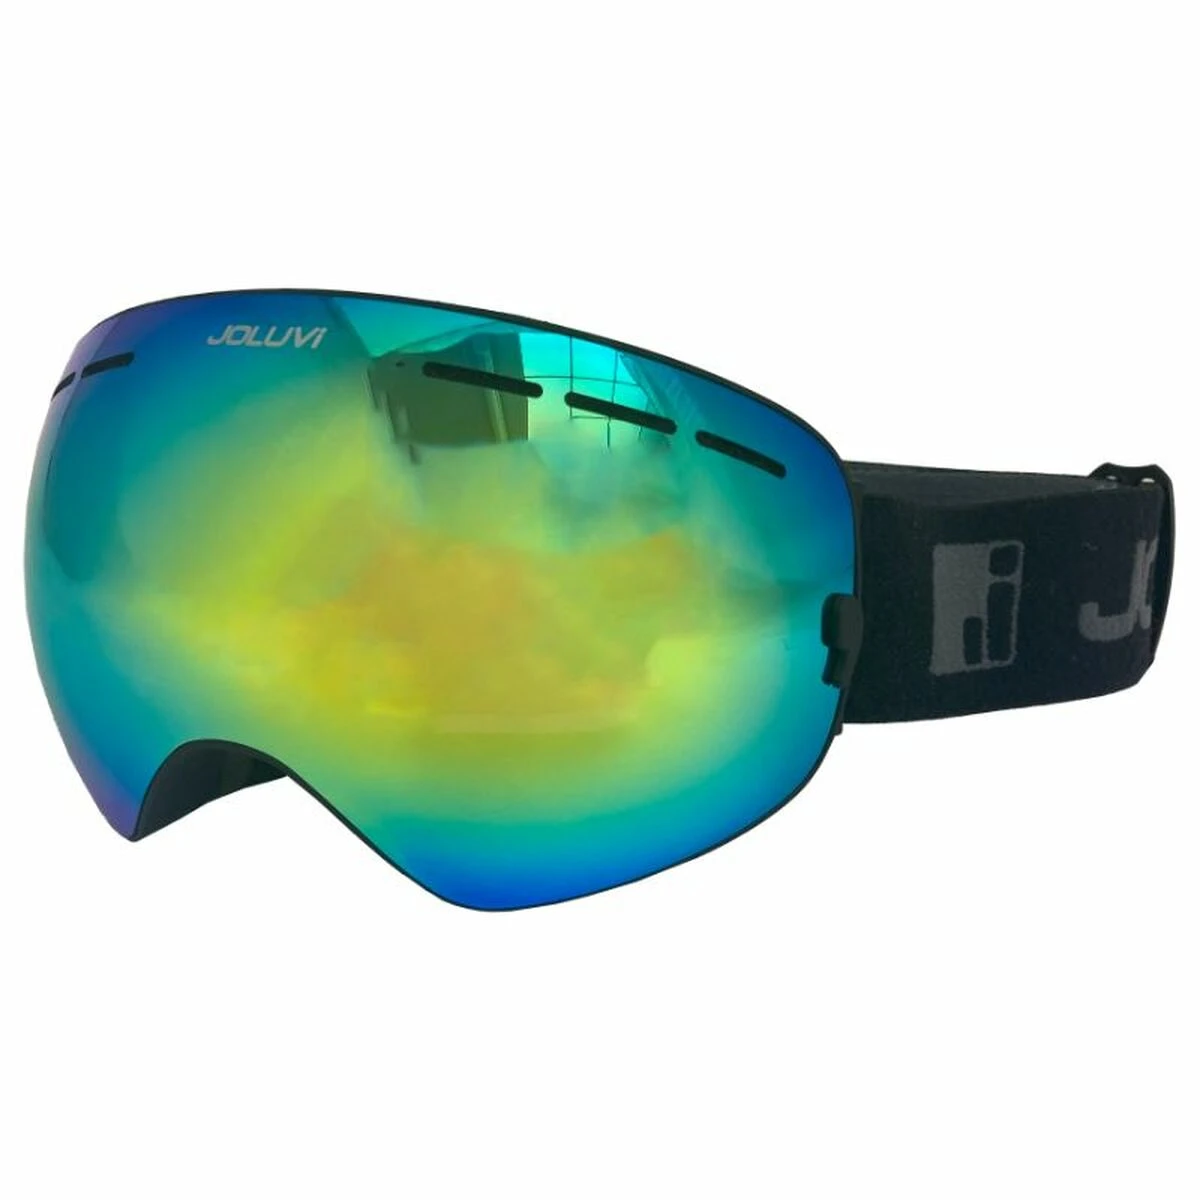 Colorful ski goggle isolated